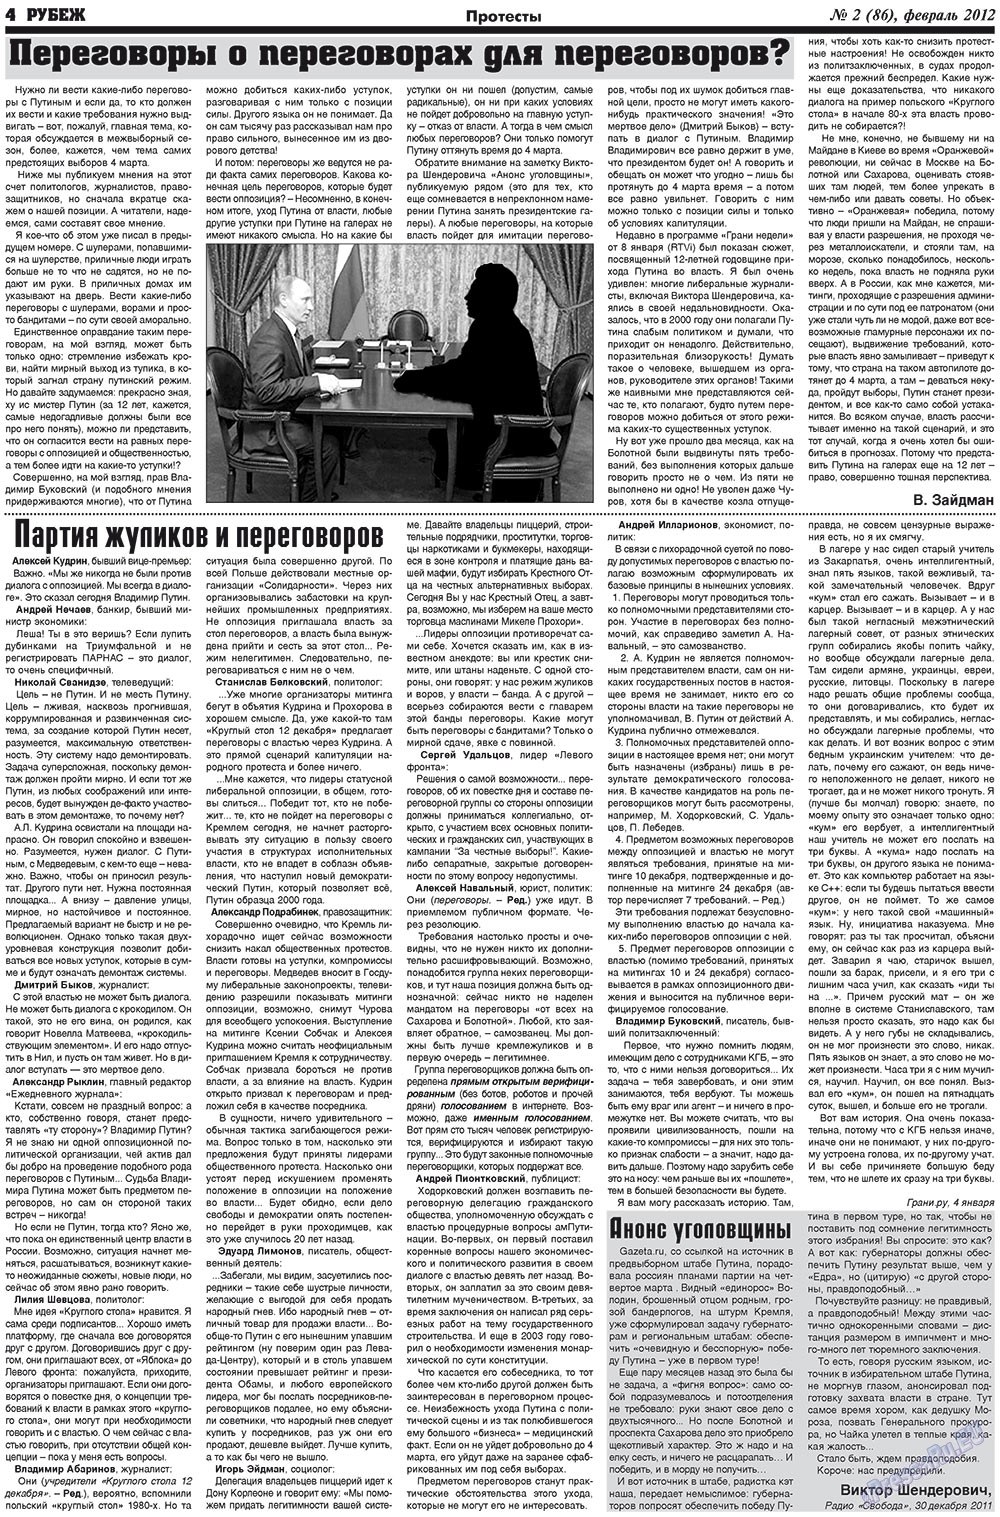 Рубеж (газета). 2012 год, номер 2, стр. 4